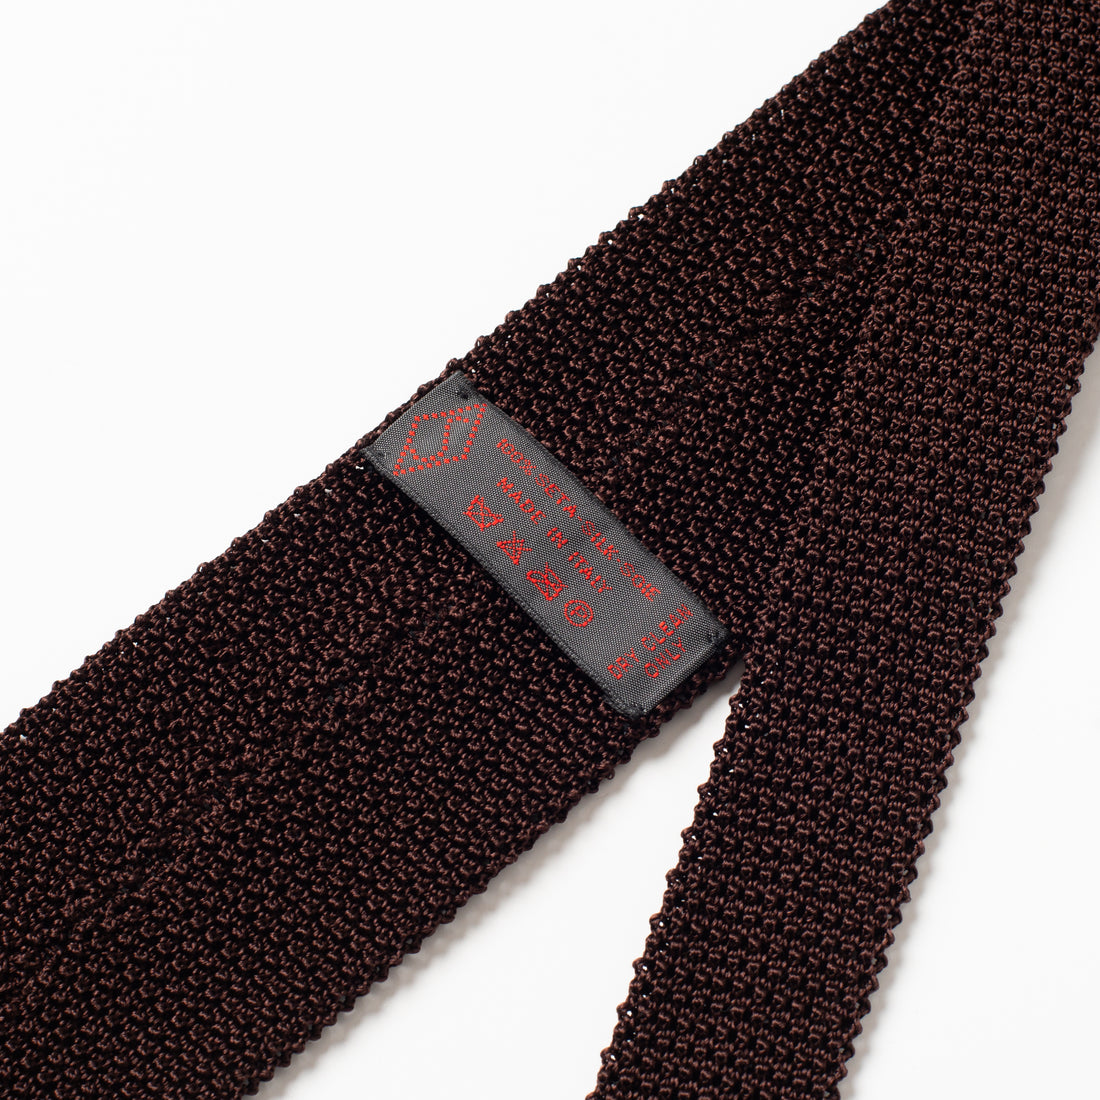 Bryceland’s Silk Knit Tie Dark Brown